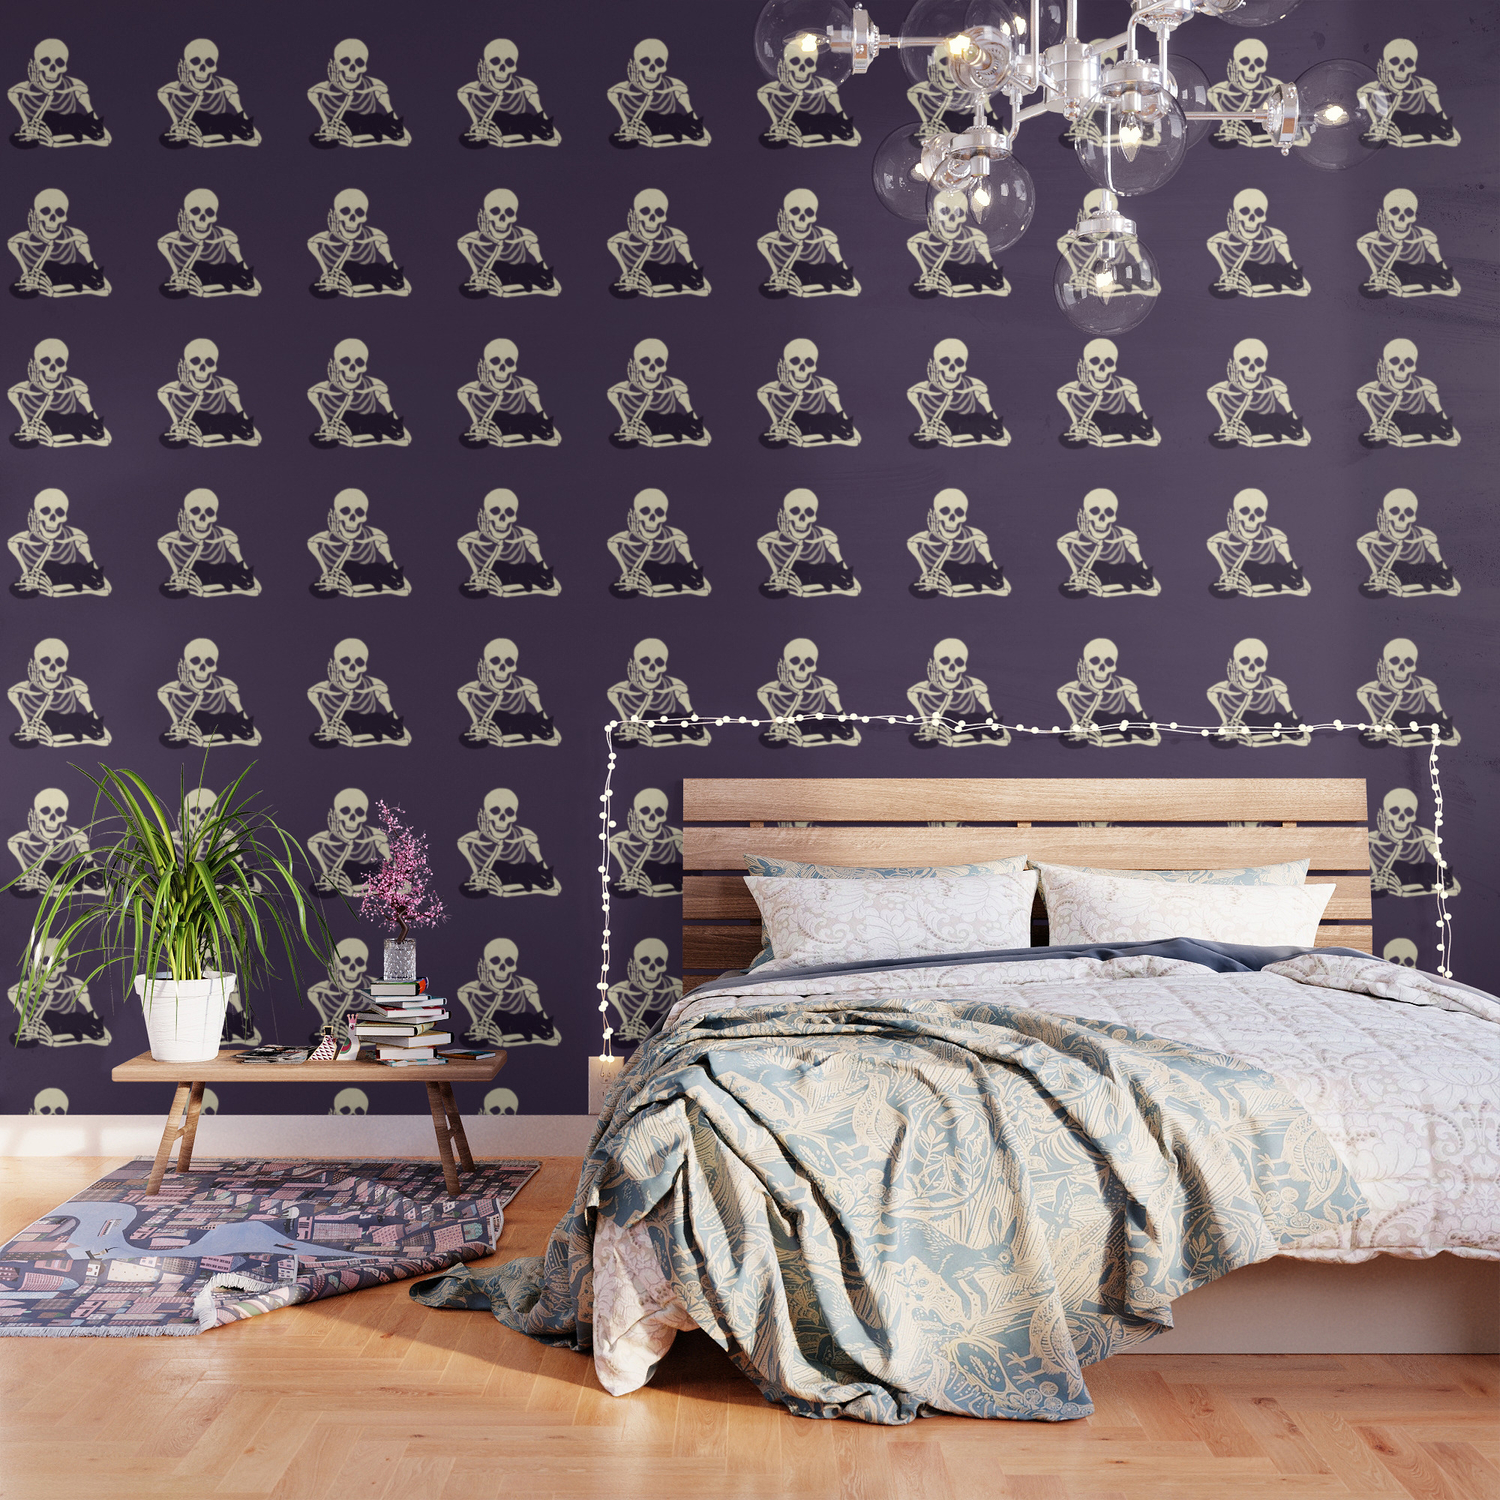 Cute Skeleton Wallpapers